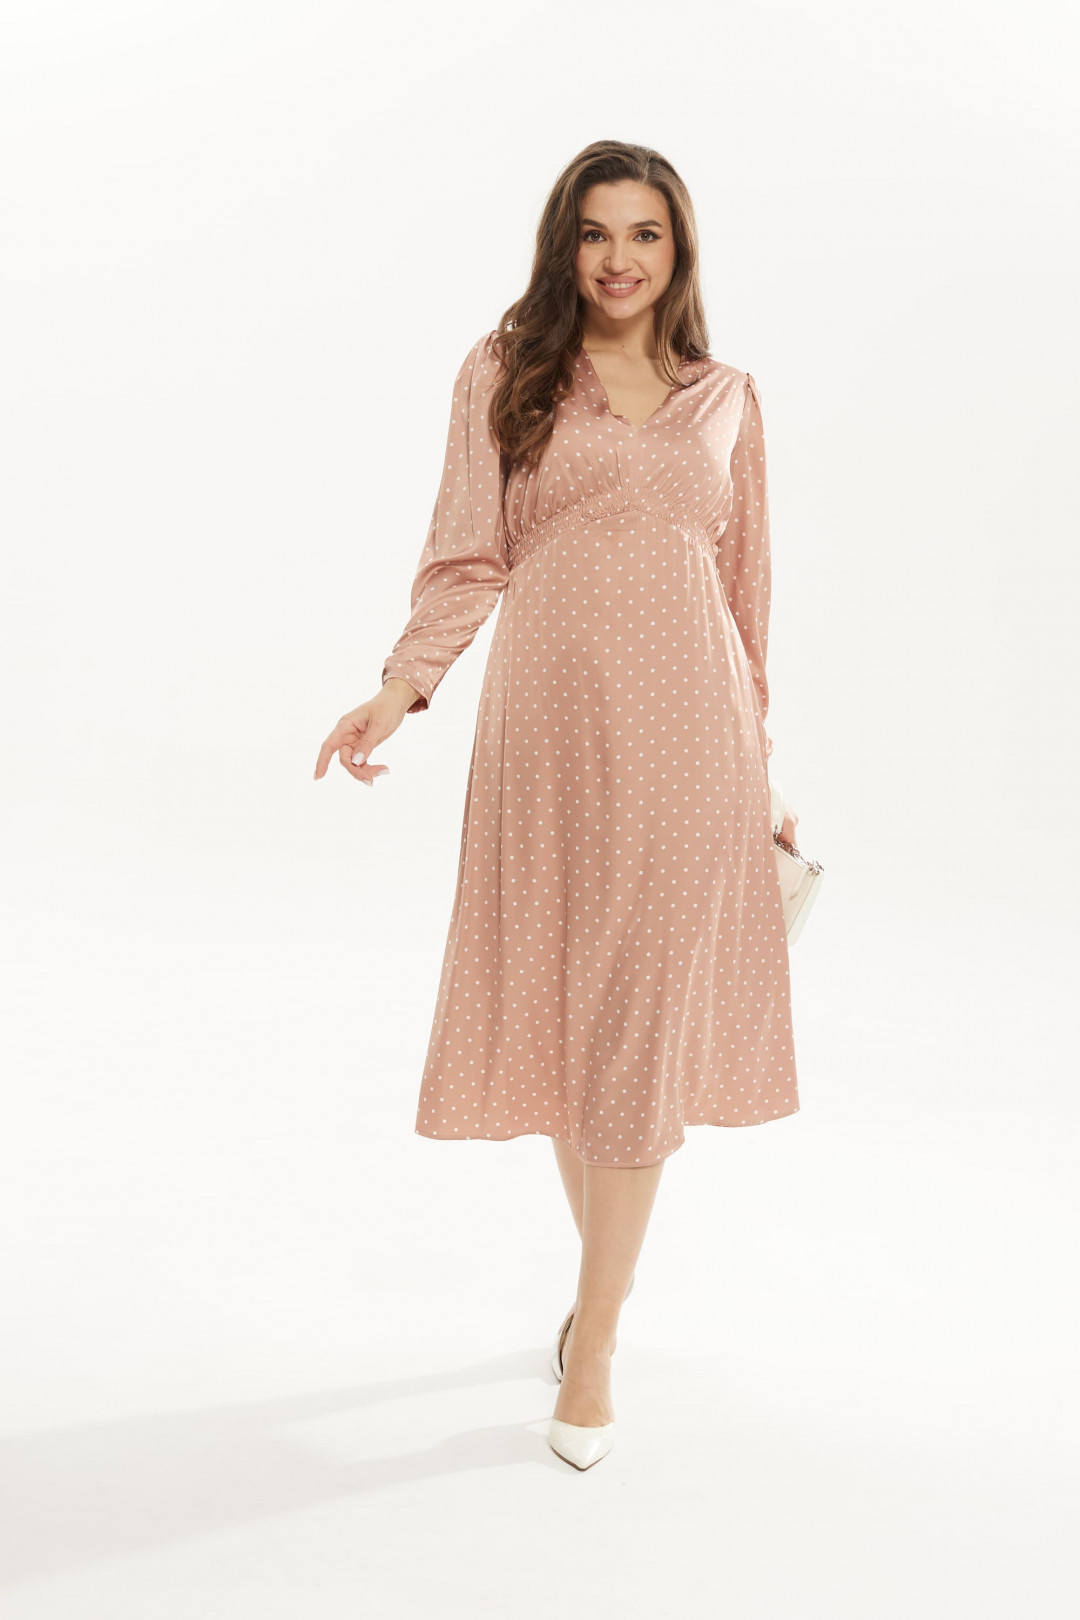 Платье MisLana С829 нежно-розовое